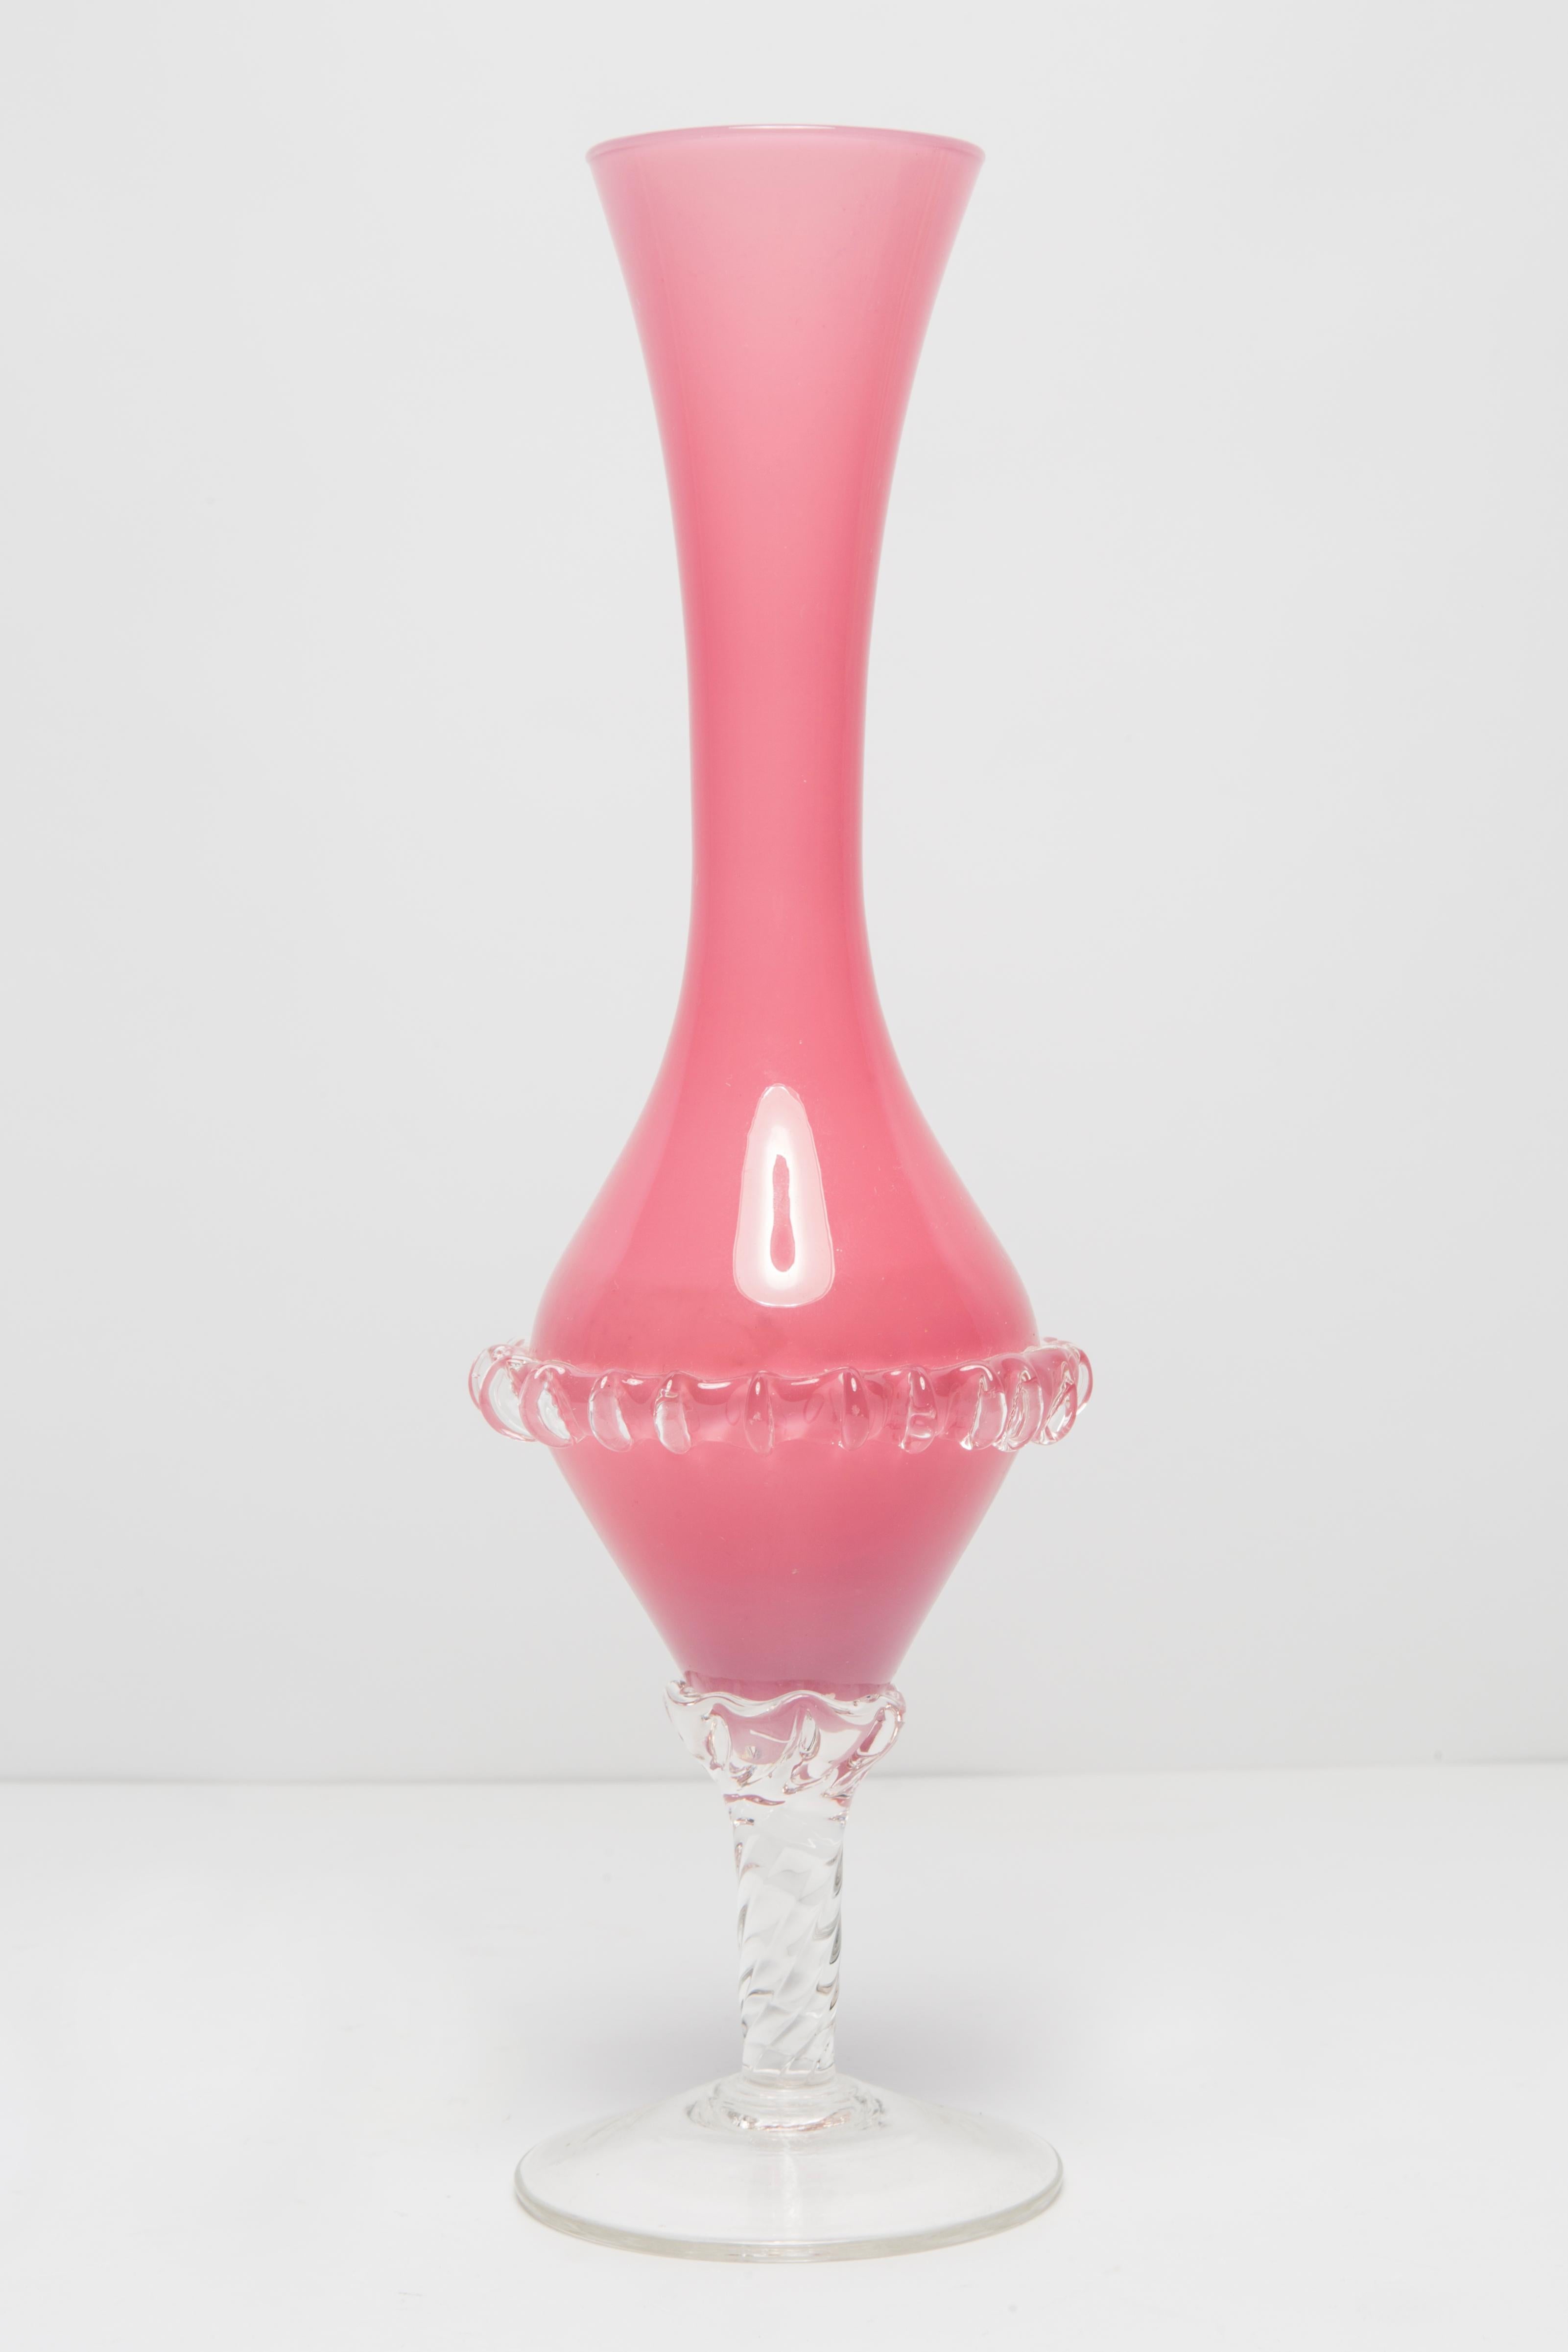 Vase, hergestellt in der Glashütte Tarnowiec in Polen, 
entworfen von J. Słuczan-Orkusz. 
Soda-Glas, massegefärbt, handgeformt. 
Vintage-Produkt aus den 1970er Jahren

Abmessungen: Höhe 29 cm

Sehr guter Zustand, kleine Kratzer auf der Unterseite,